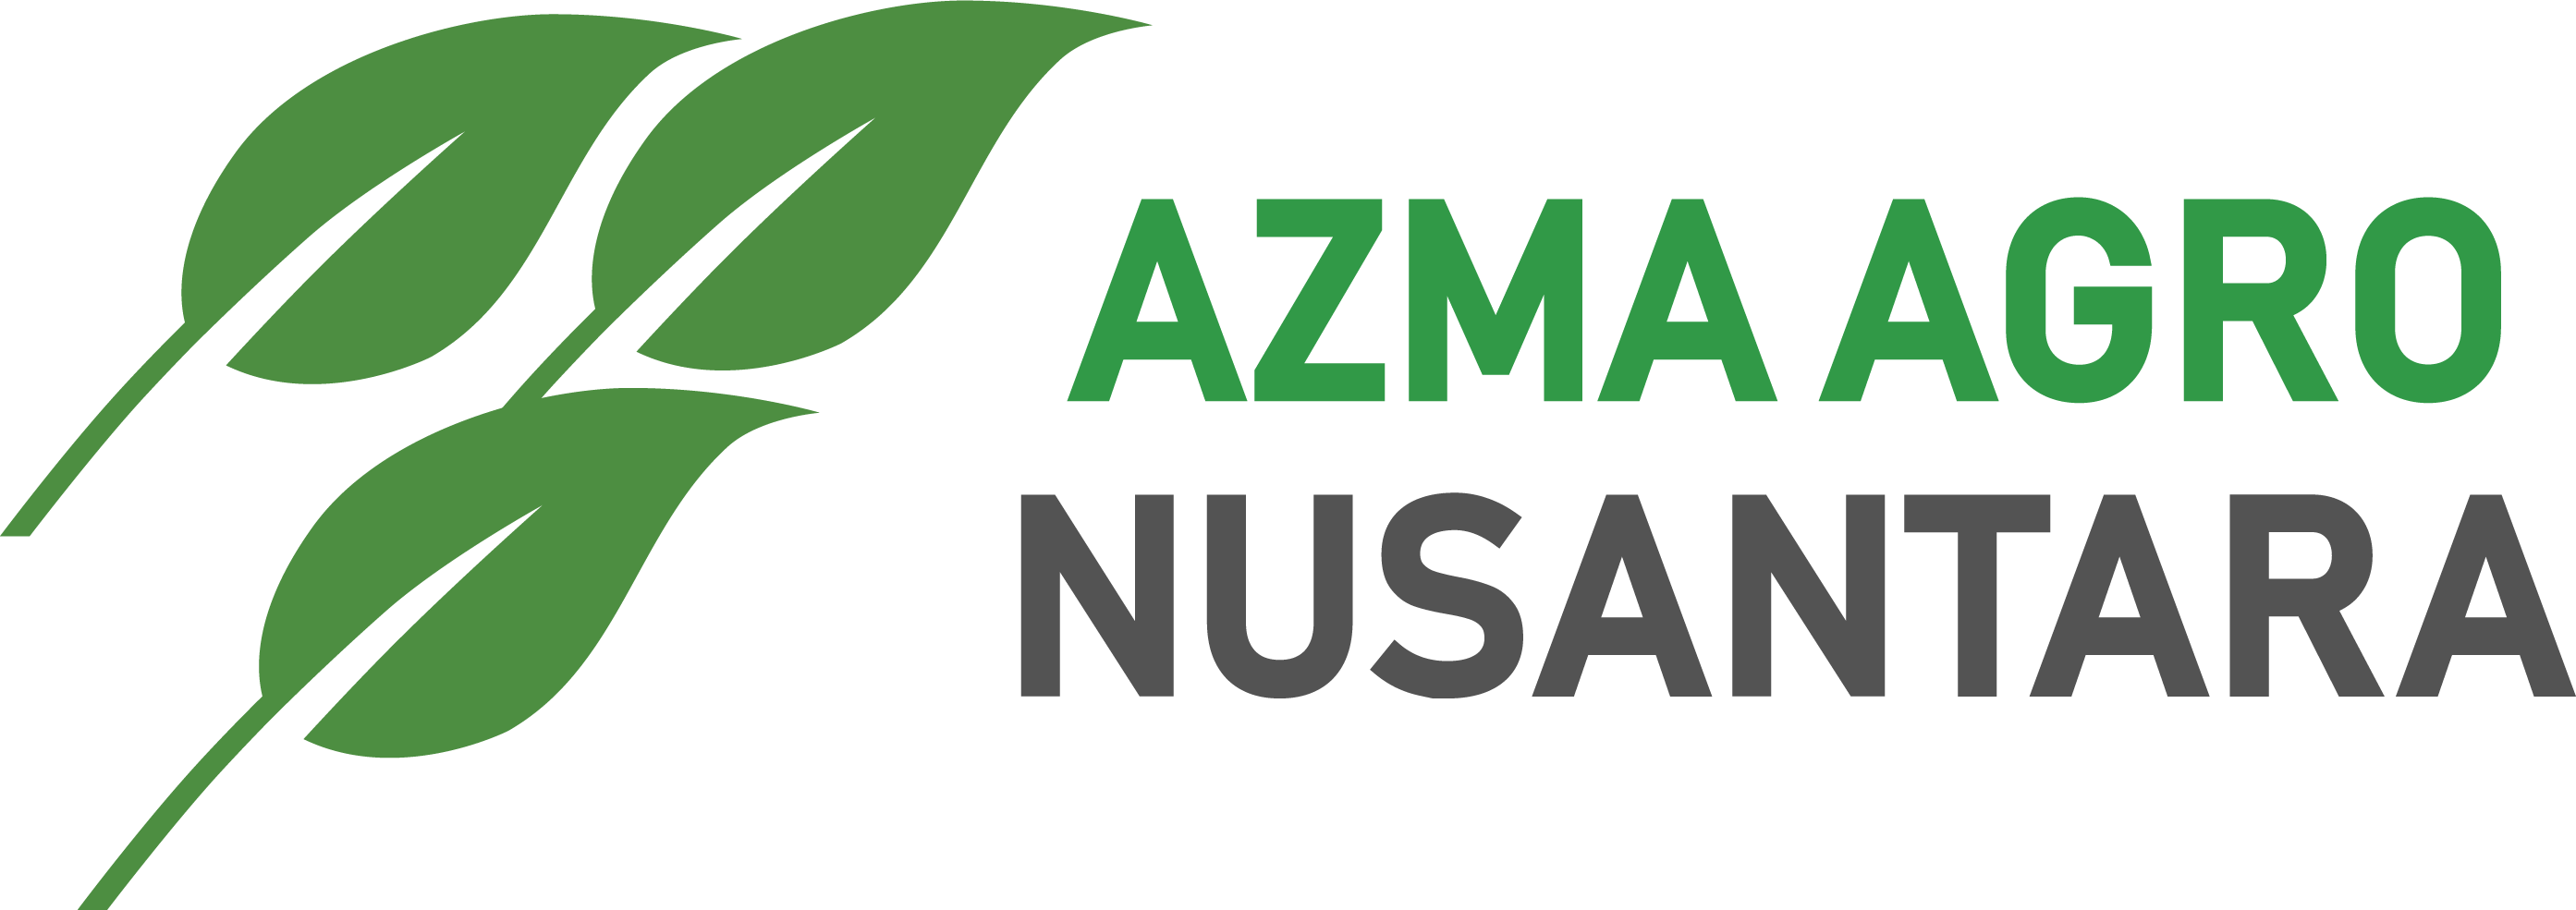 Azma Agro Nusantara